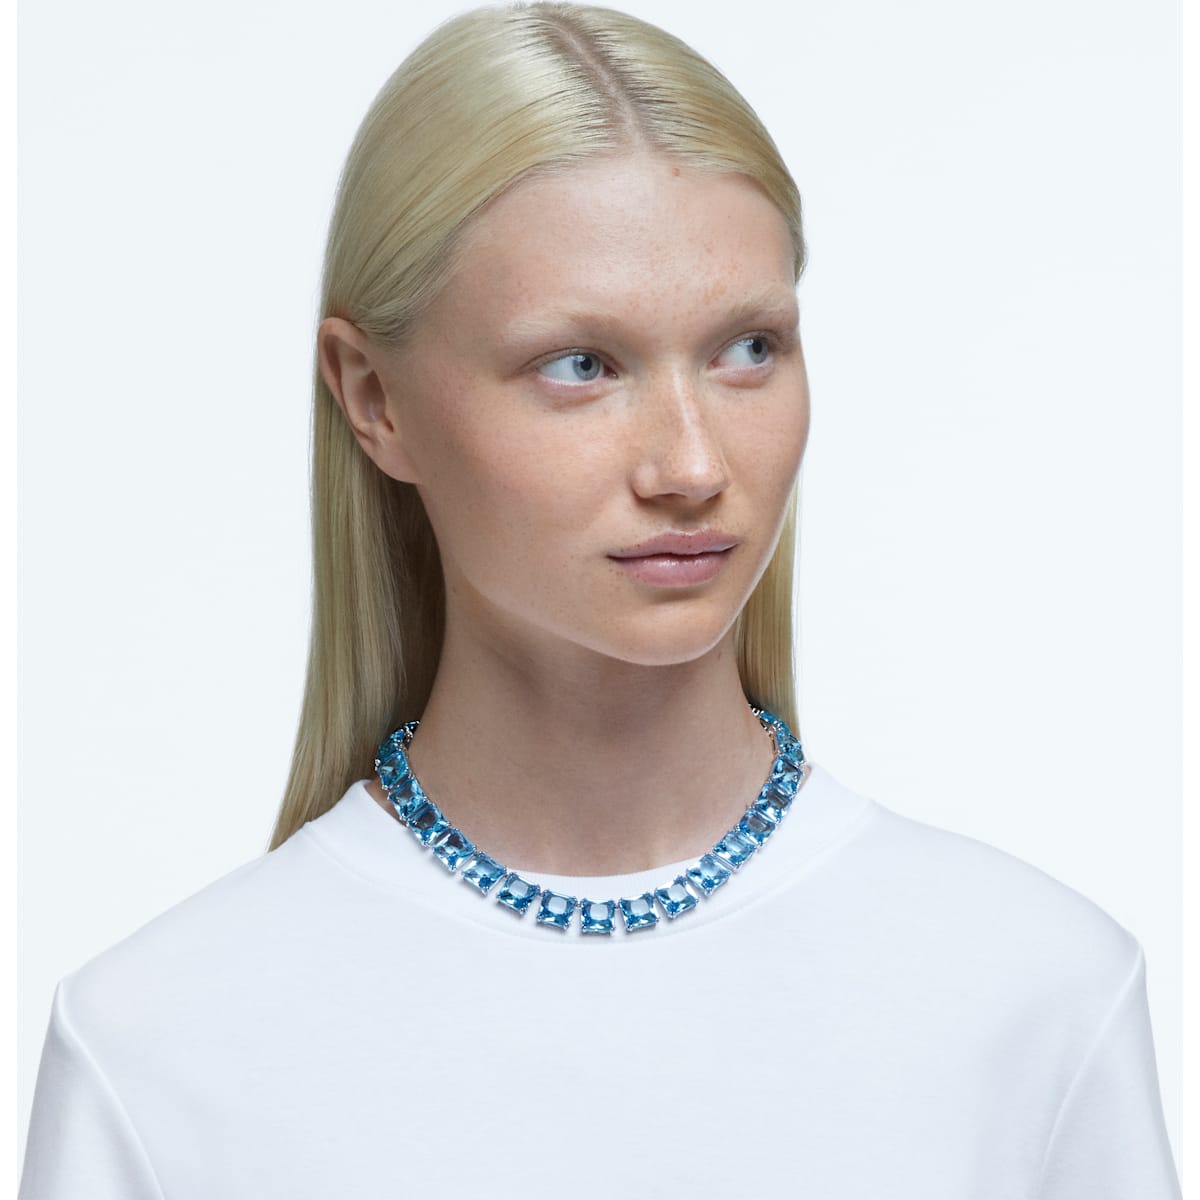 Swarovski - Millenia Halskette, Kristalle im Quadrat-Schliff, Blau, Rhodiniert - CRYSTAL UNTERBERGER